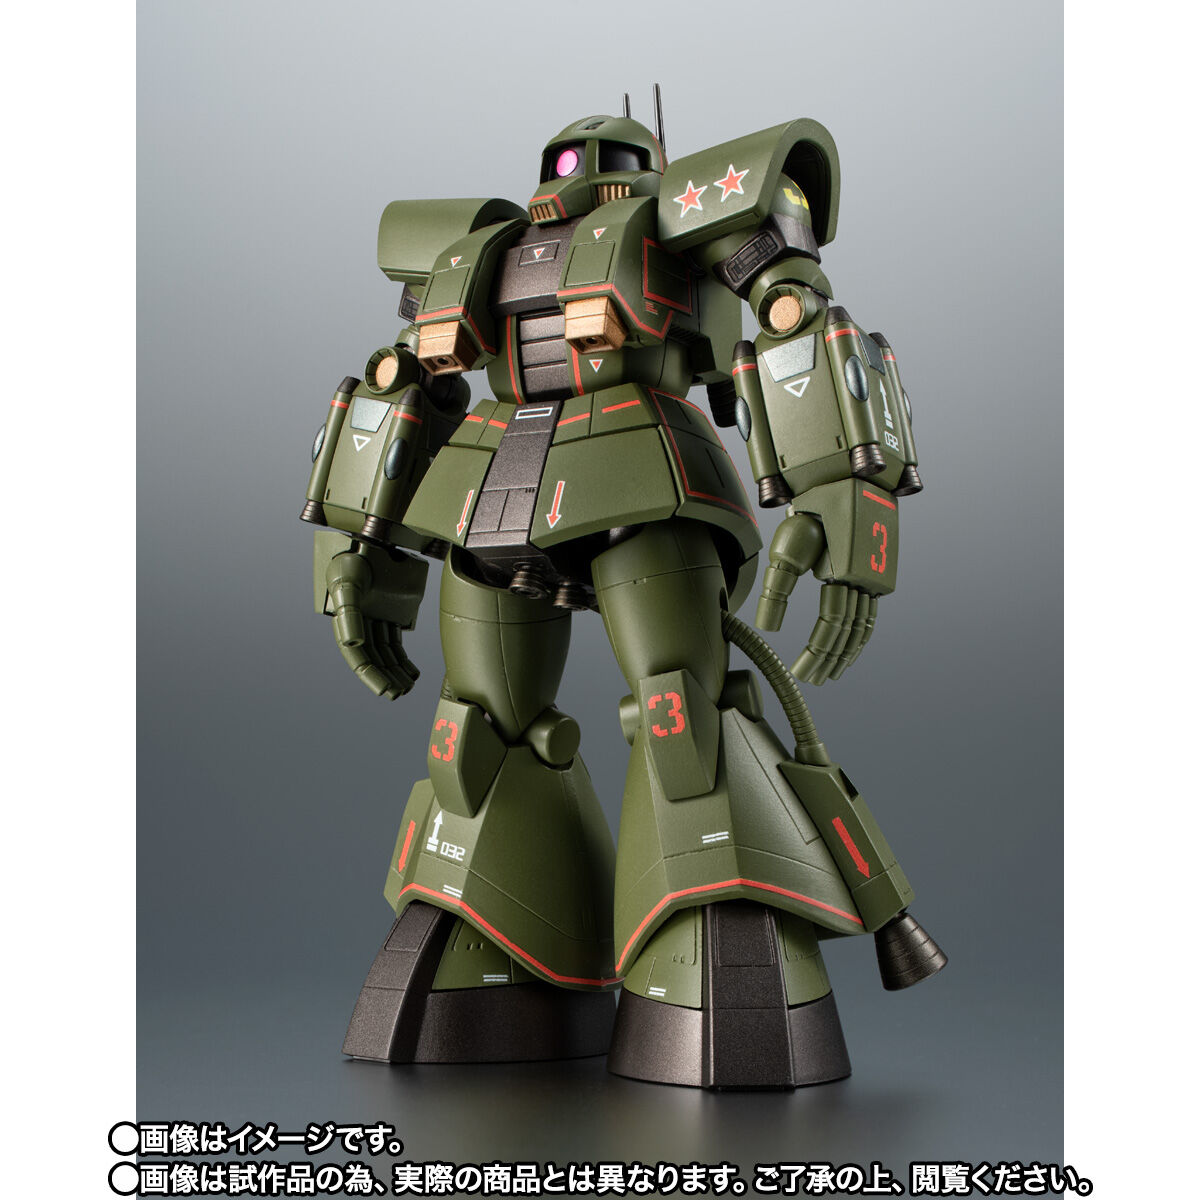 【限定販売】ROBOT魂〈SIDE MS〉『MS-06Z サイコミュ試験用ザク ver. A.N.I.M.E.』機動戦士ガンダム MSV 可動フィギュア-002